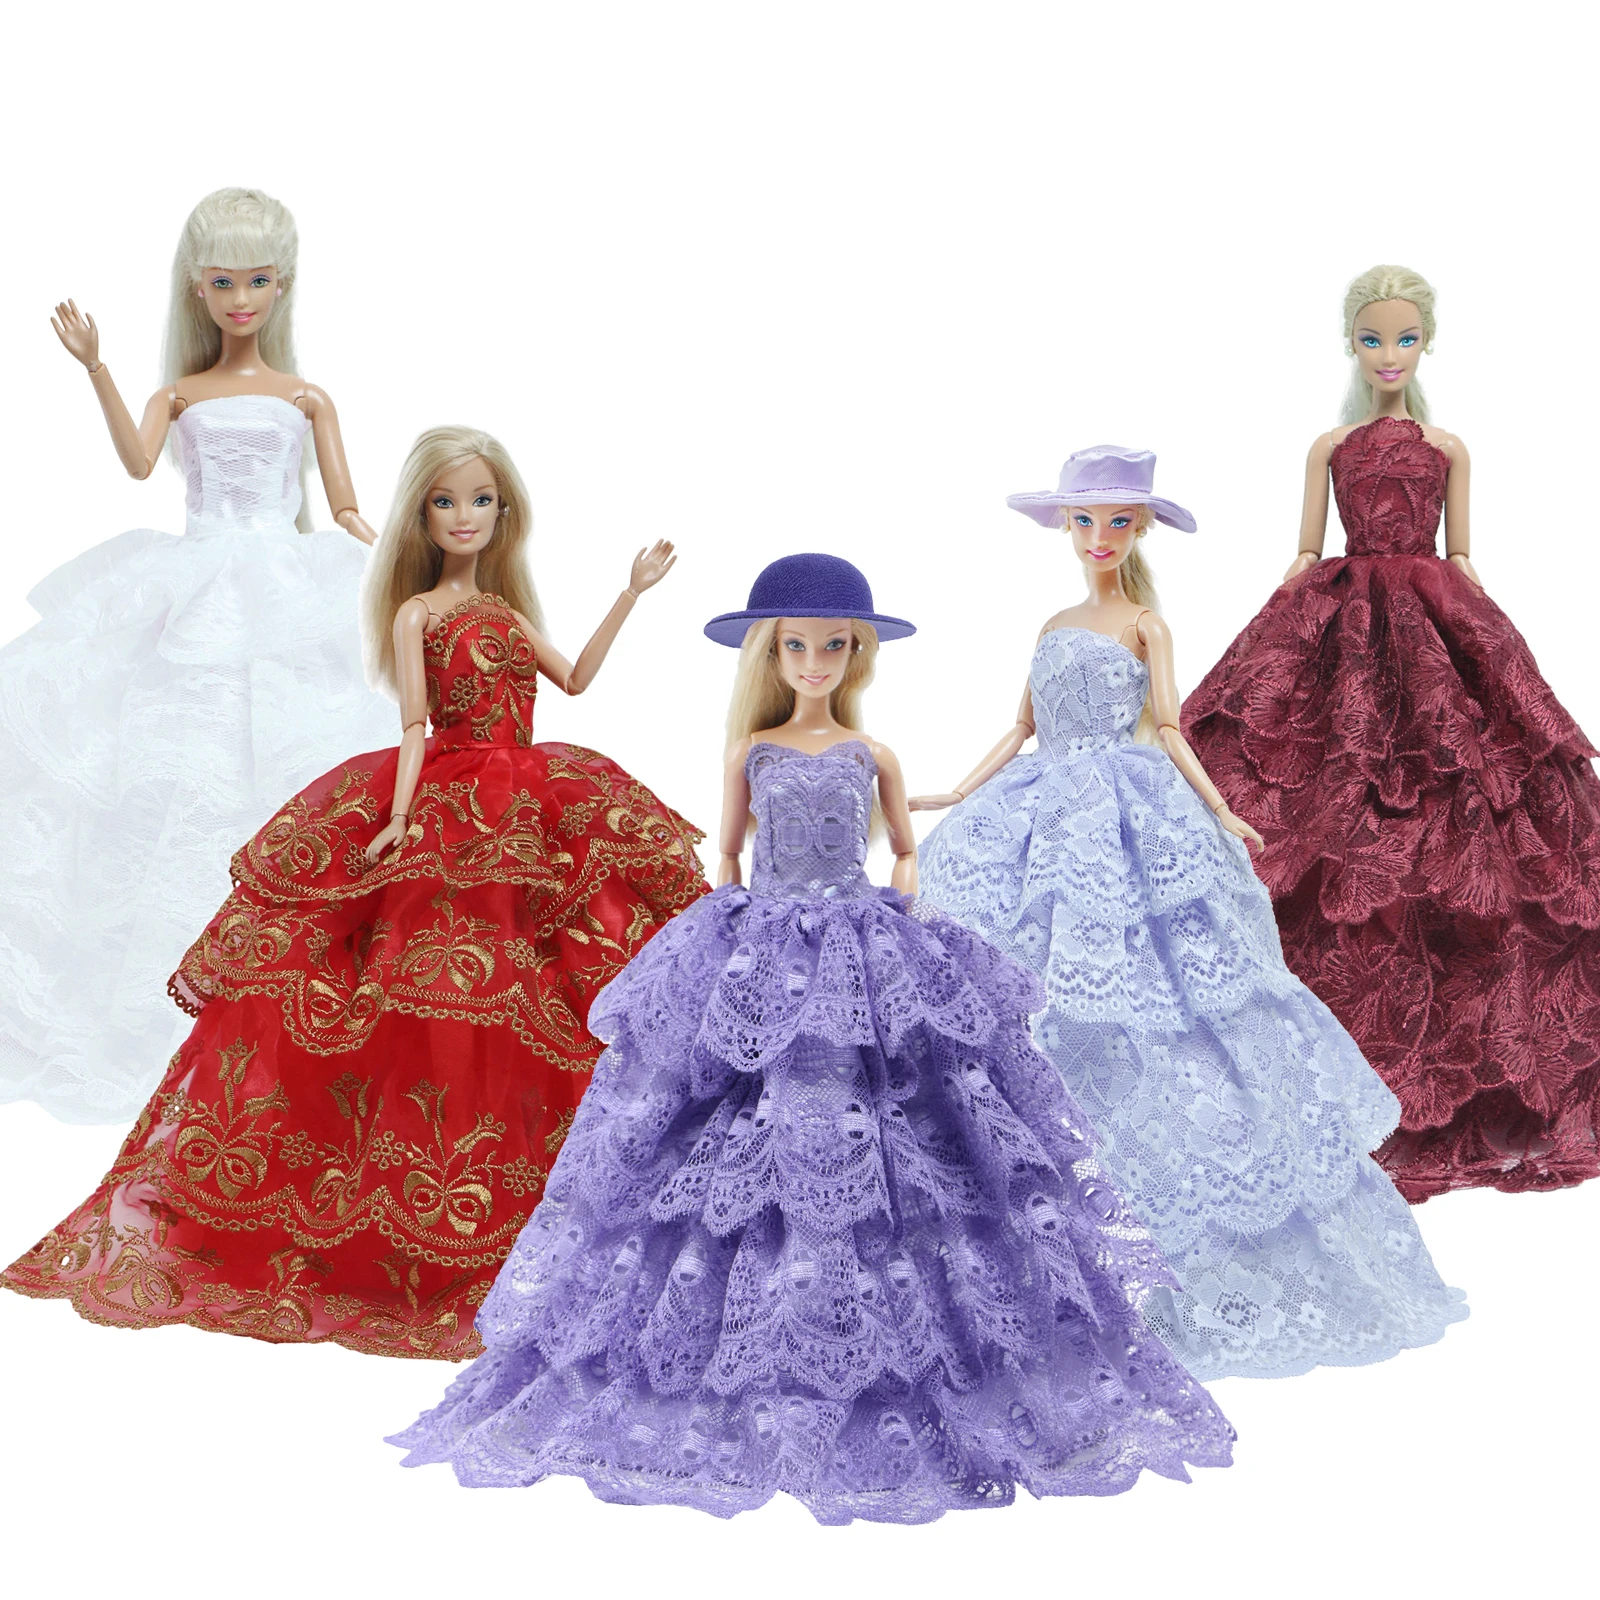 Play Handmade Wedding Doll Dress Princess Evening Party Ball Long Gown Skirt Bri - £22.91 GBP